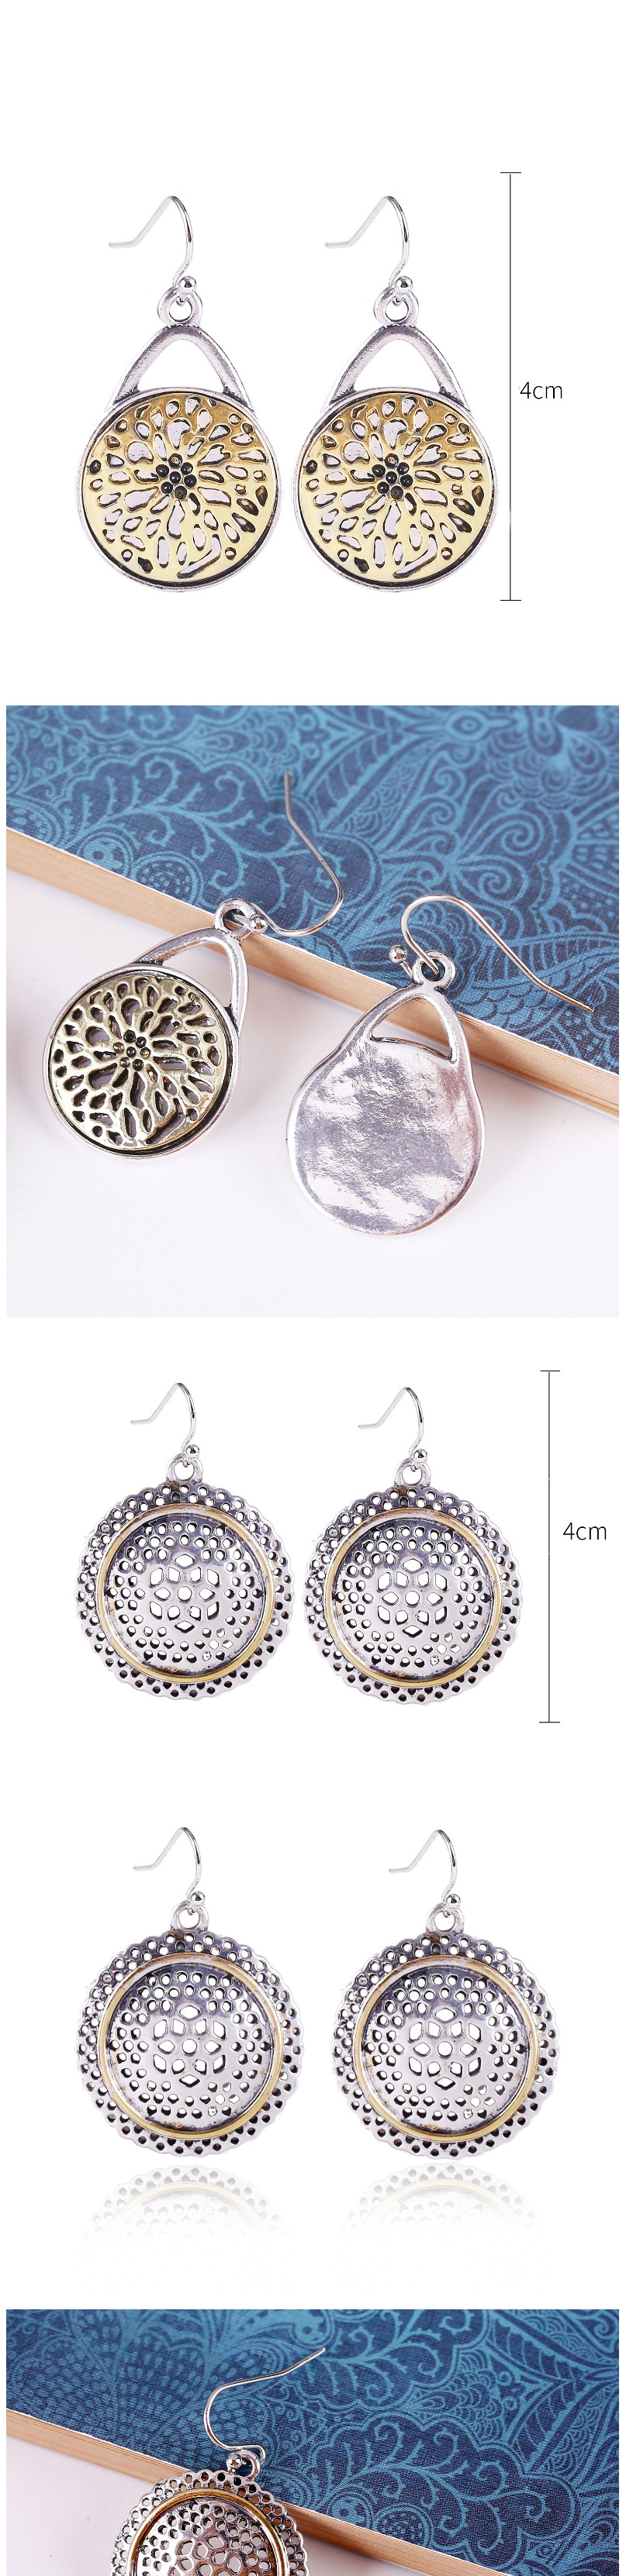 Fashion Silver Alloy Hand Wrapped Geometric Earrings,Drop Earrings